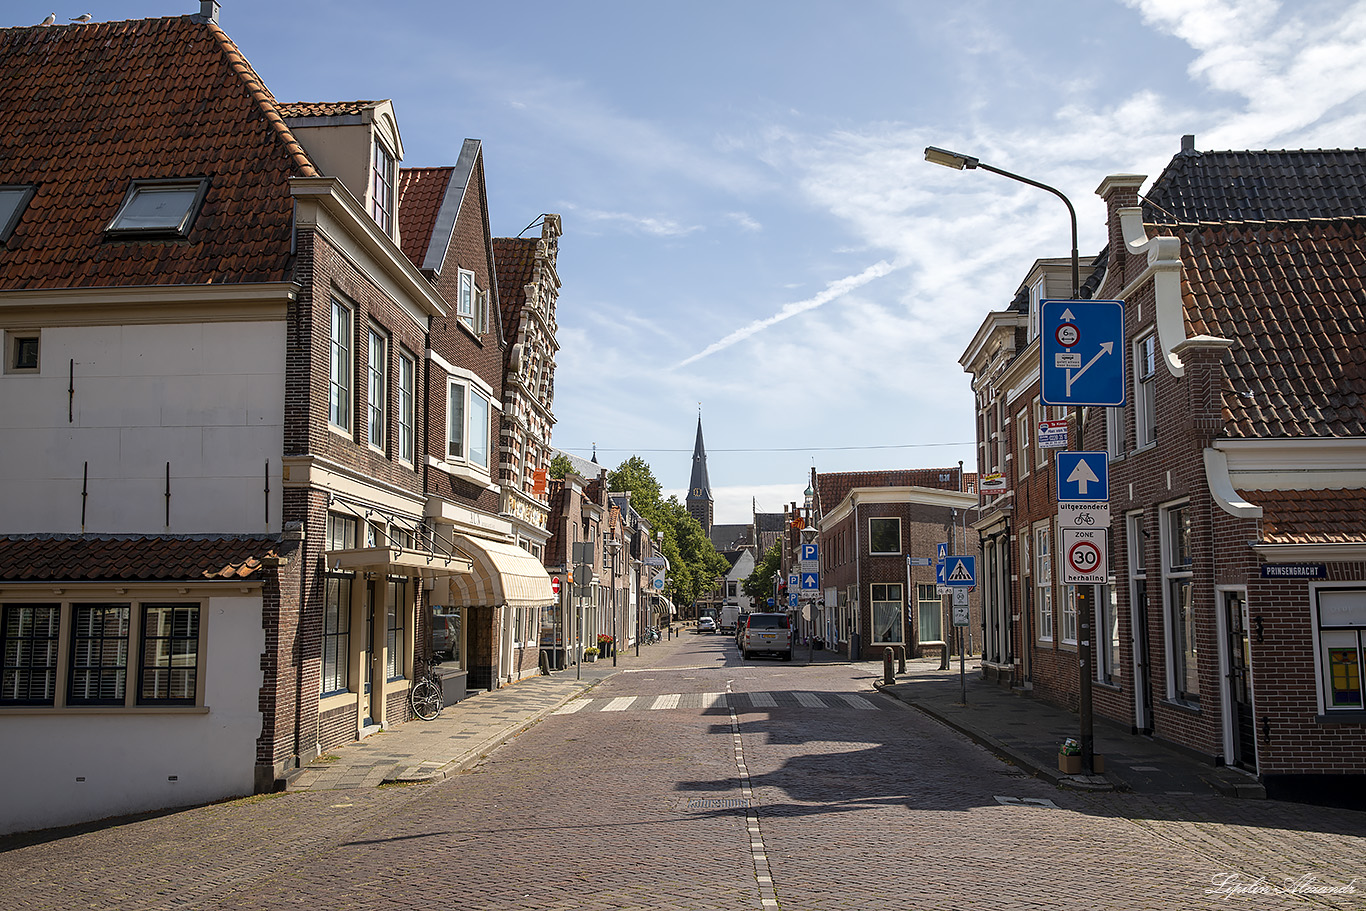 Энкхёйзен (Enkhuizen) - Нидерланды (Nederland)